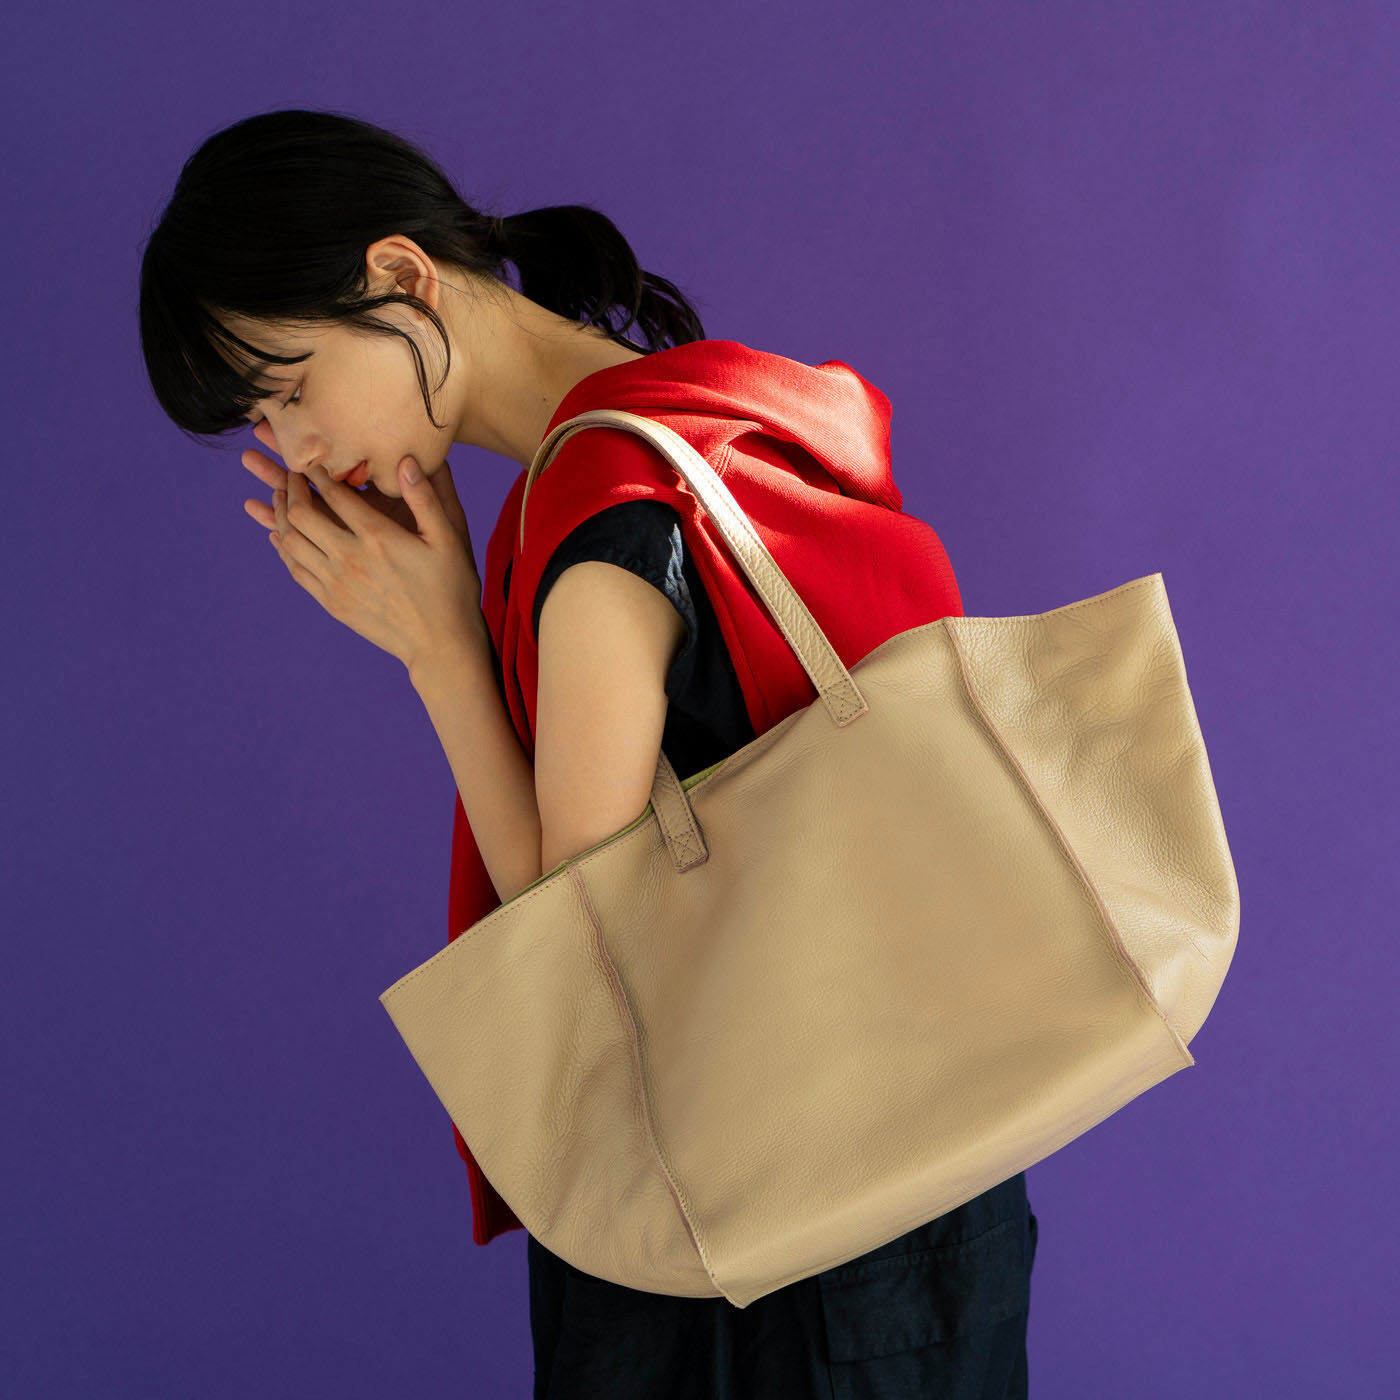 ＆Stories|福岡の鞄作家が作った 職人本革のナーヴェトート〈エクリュベージュ〉|福岡の鞄職人・岡さんによる、上質な本革をたっぷりと使った贅沢バッグ。革を愛する岡さんの真骨頂です。